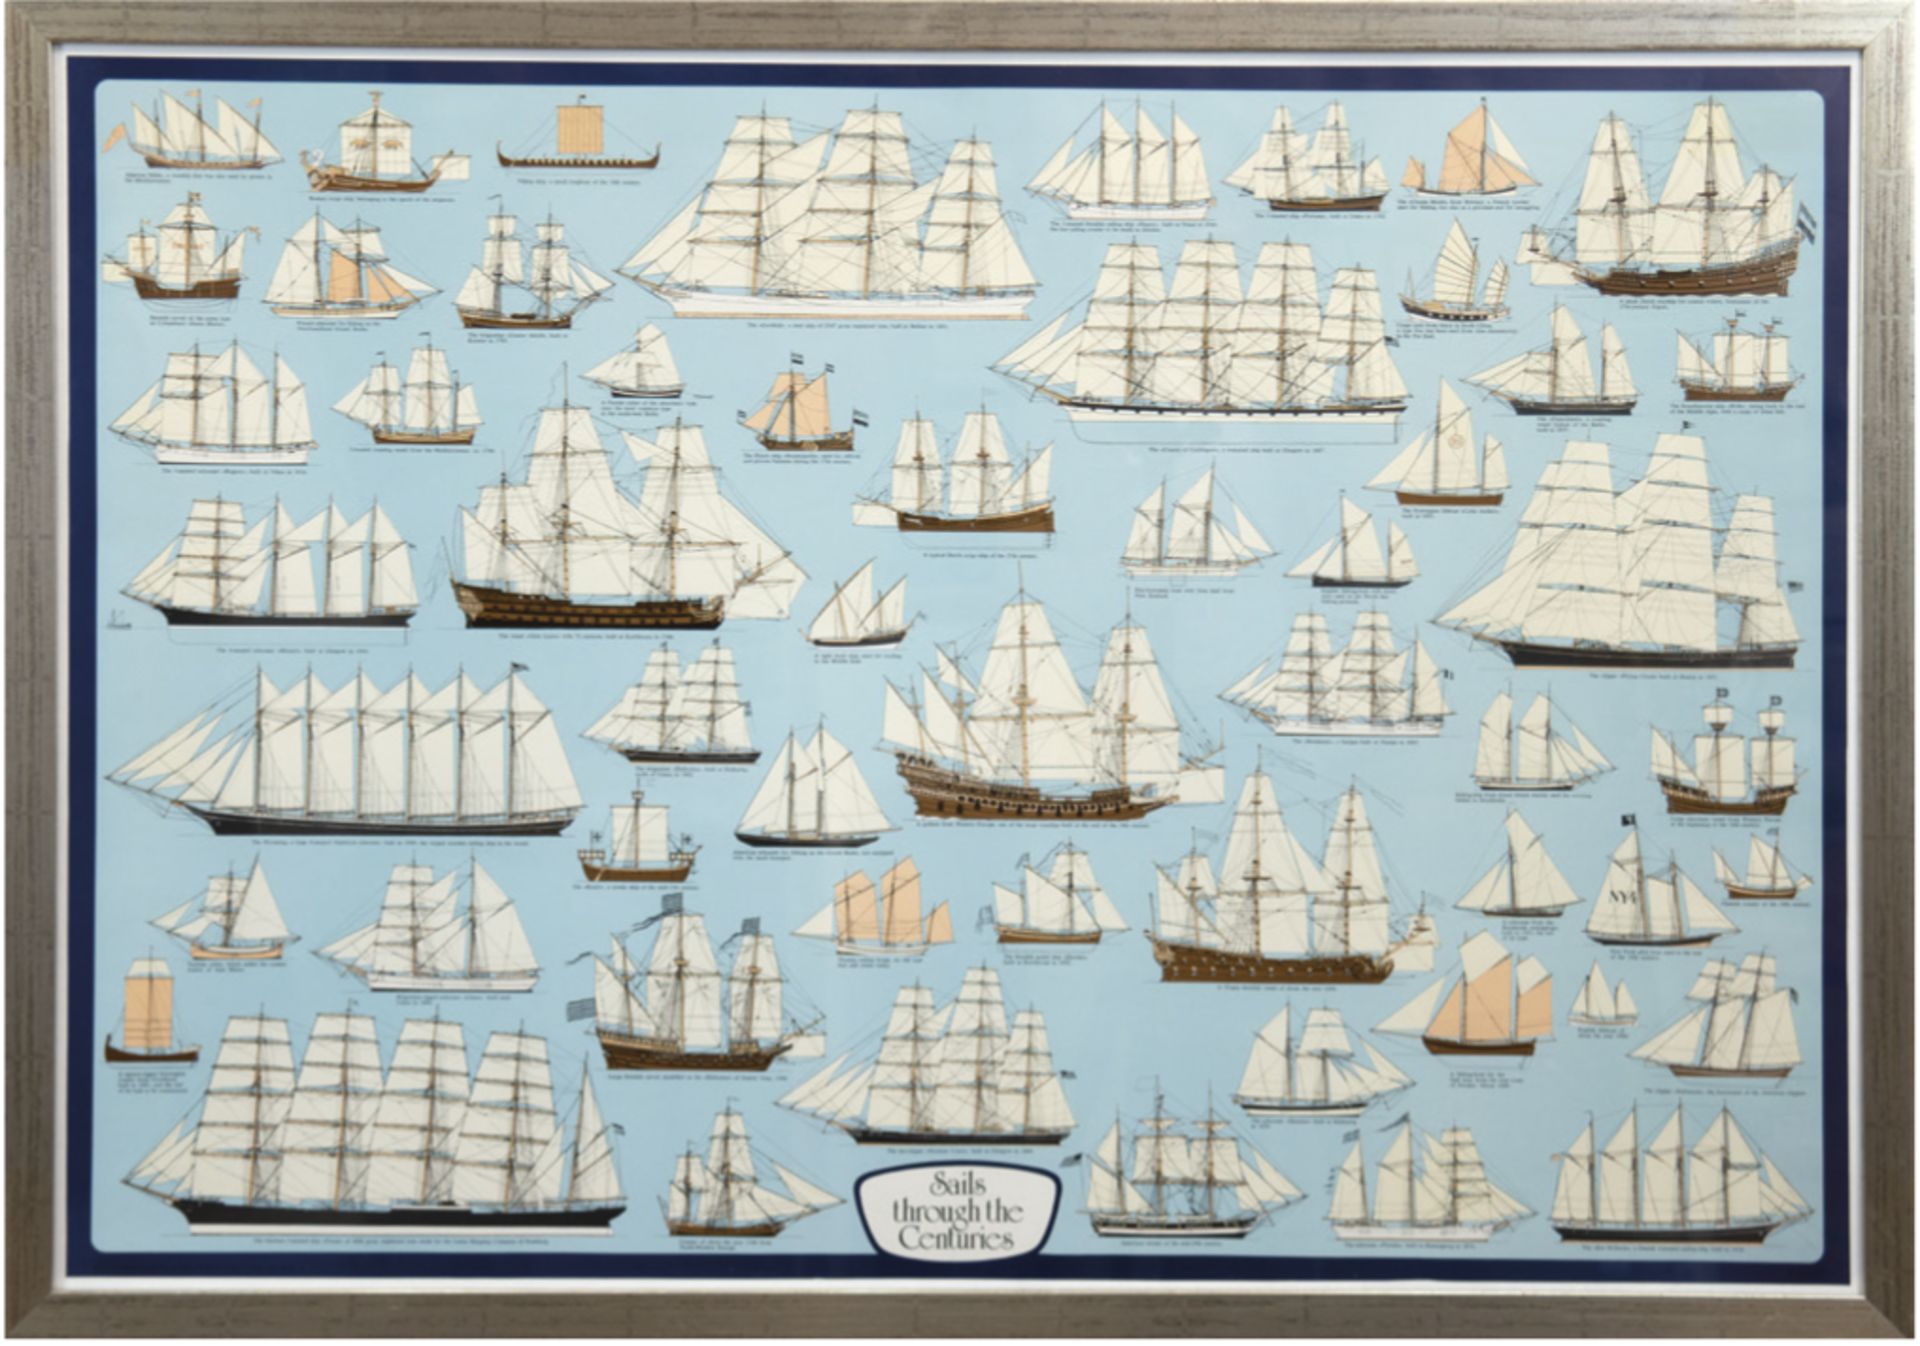 "Segelschiffe der verschiedenen Jahrhunderte", Kunstdruck, 70x100 cm, hinter Glas imRahmen